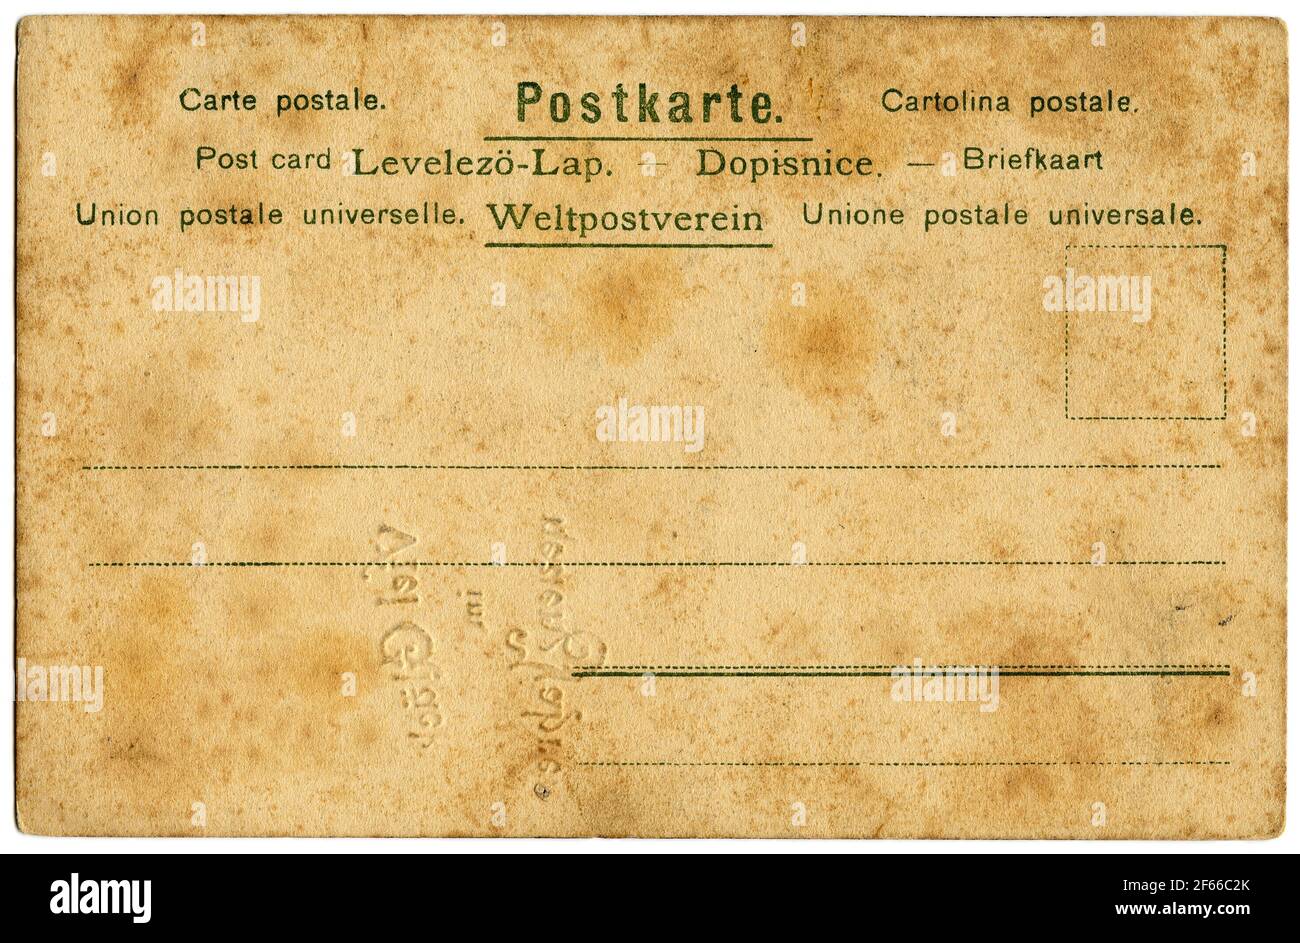 Cartolina di carta colorata antica con avvisi in varie lingue Foto Stock